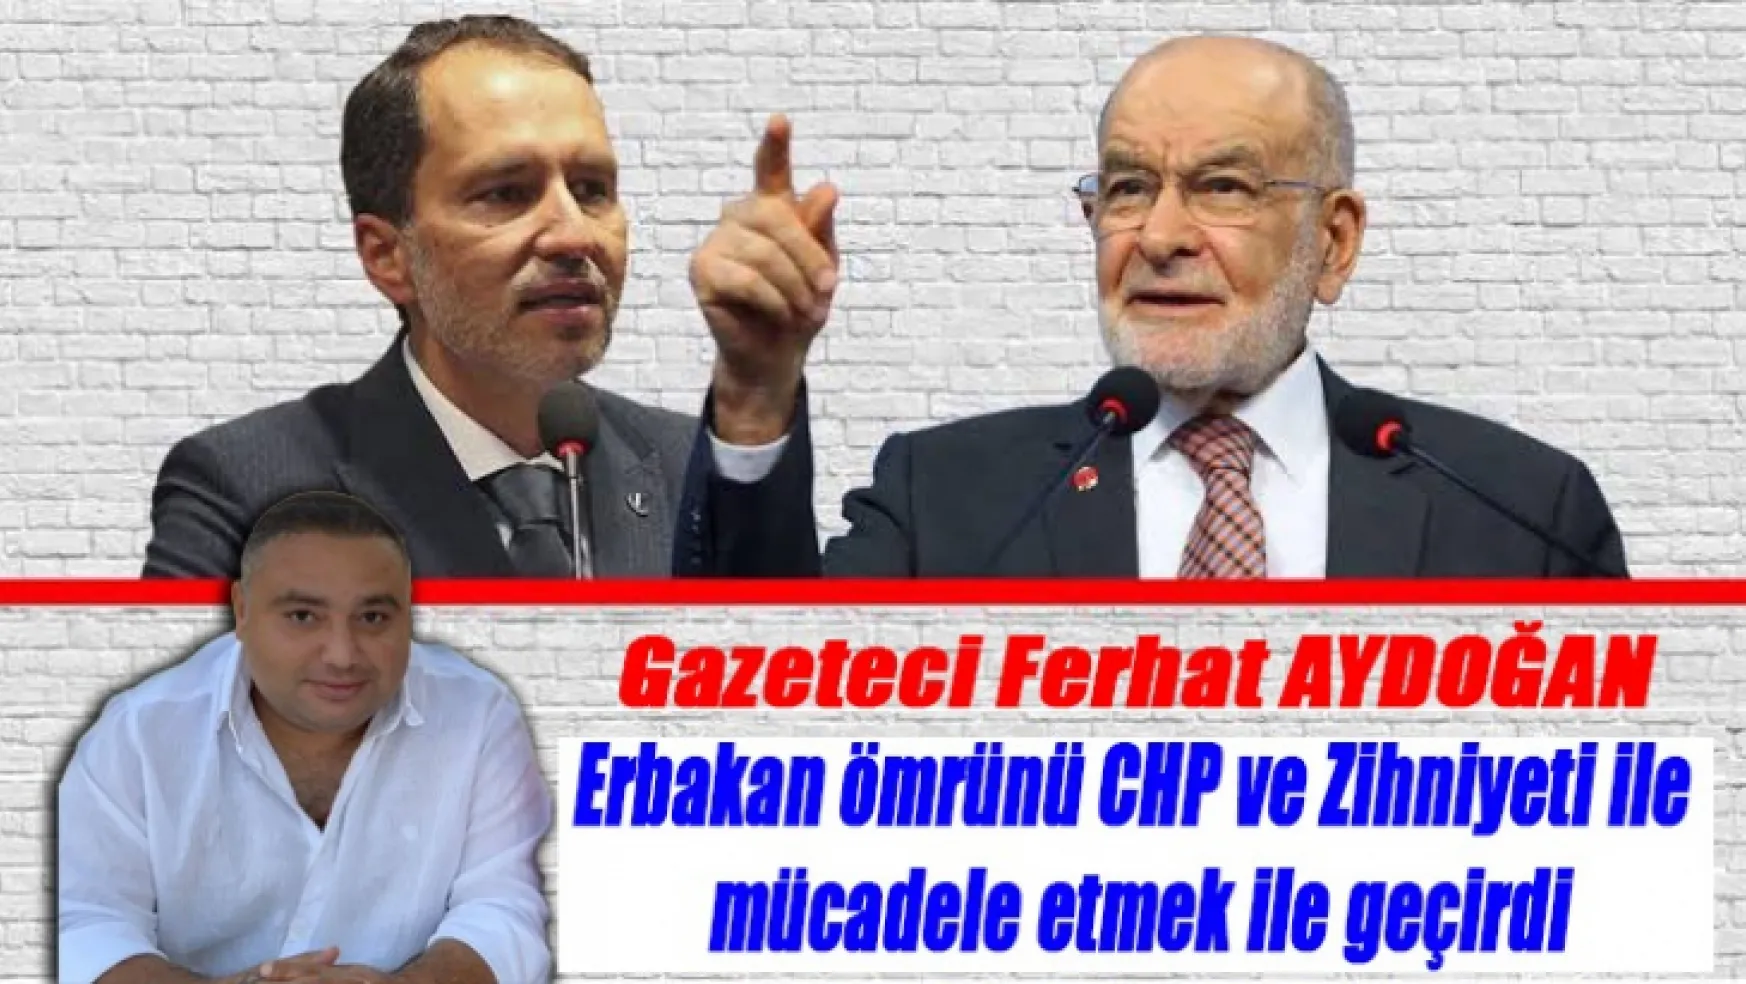 Ferhat Aydoğan Erbakan ömrünü CHP ve Zihniyeti ile mücadele etmek ile geçirdi